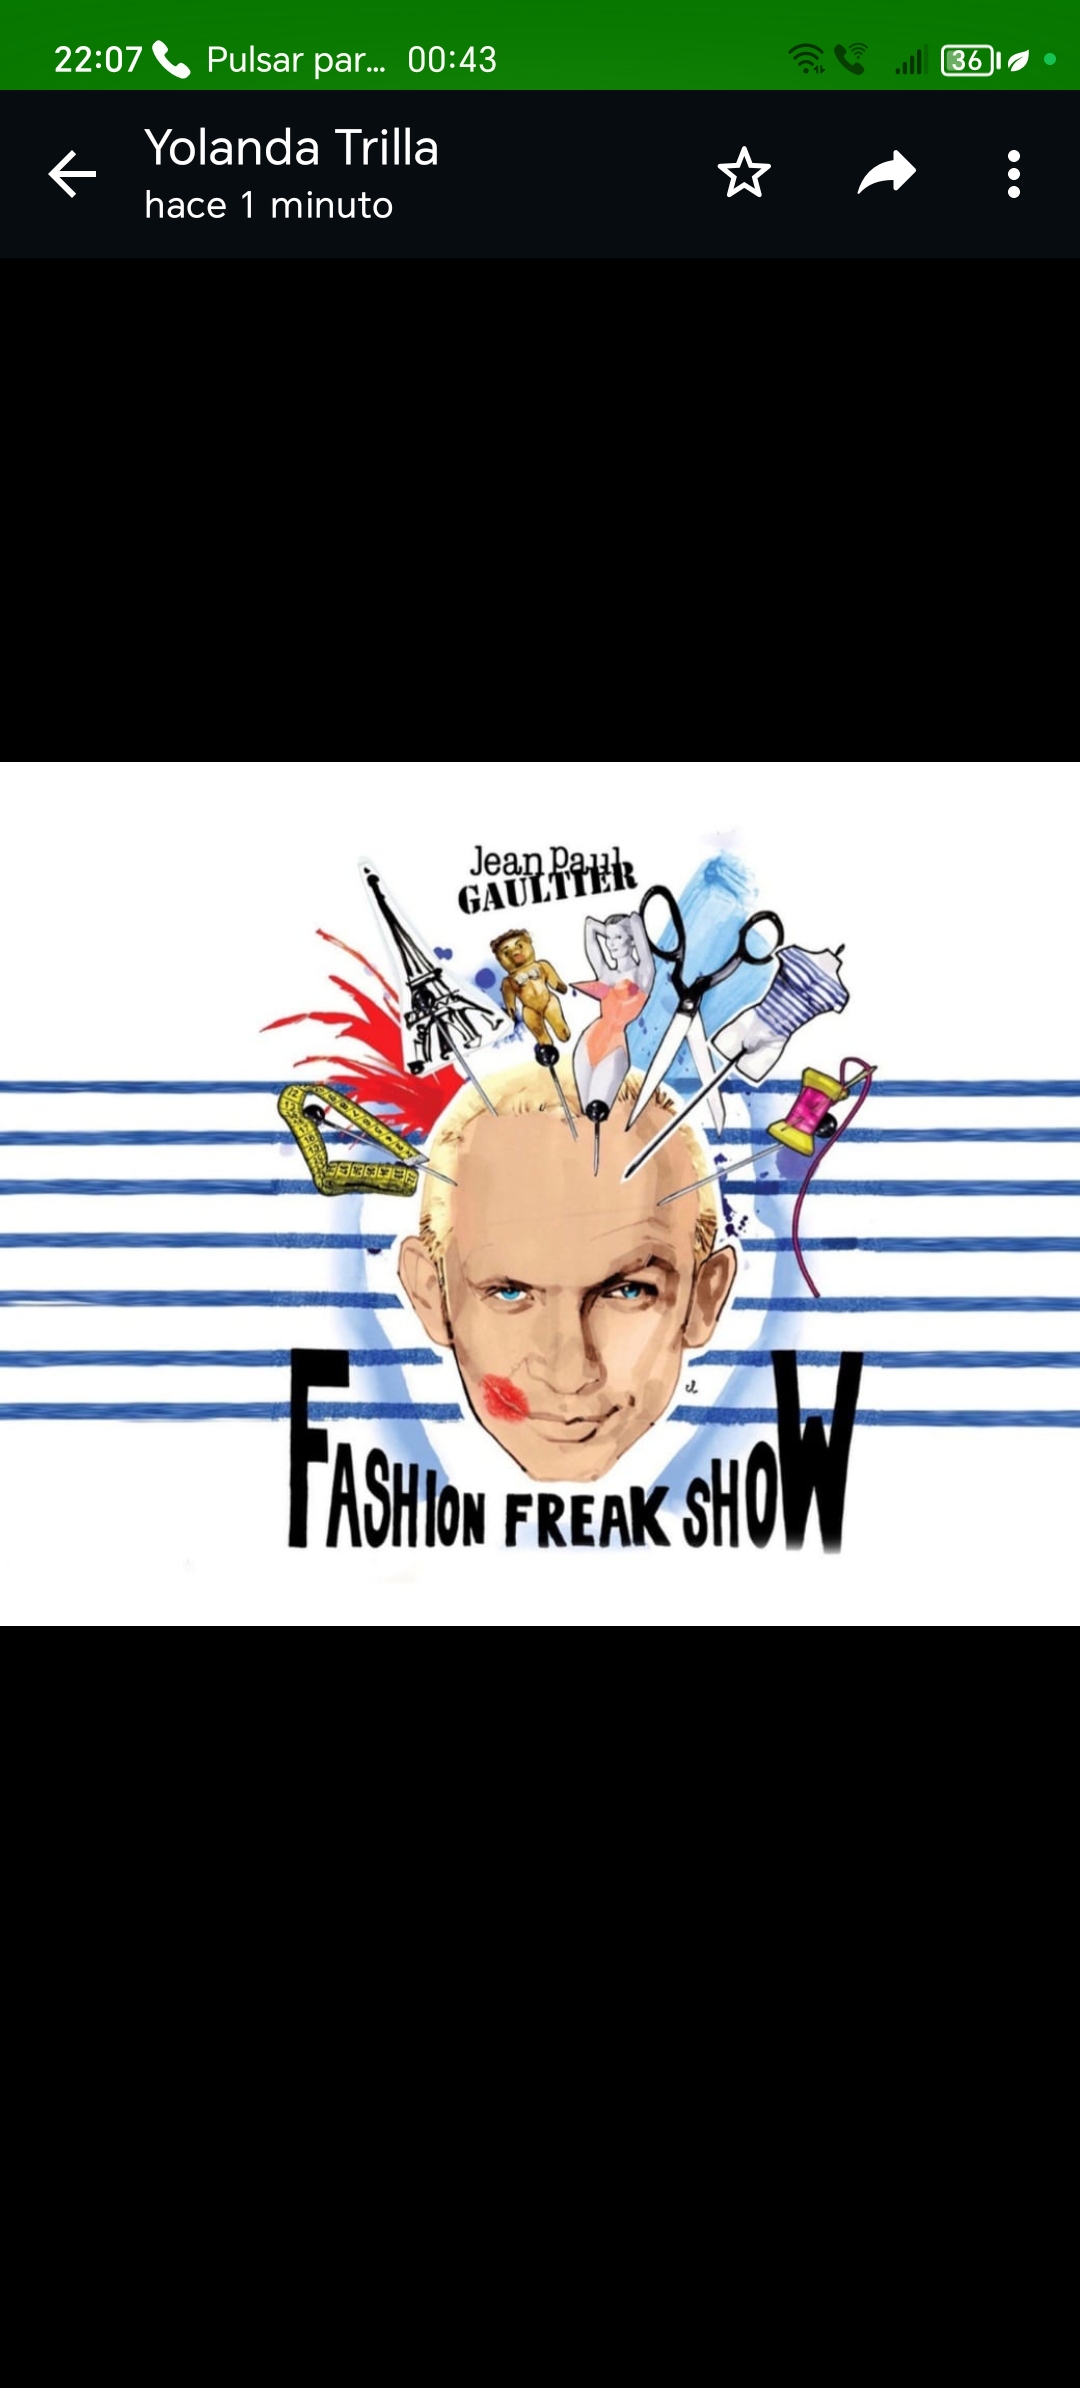 Llega a Barcelona el «Fashion Freak Show» de Jean Paul Gaultier